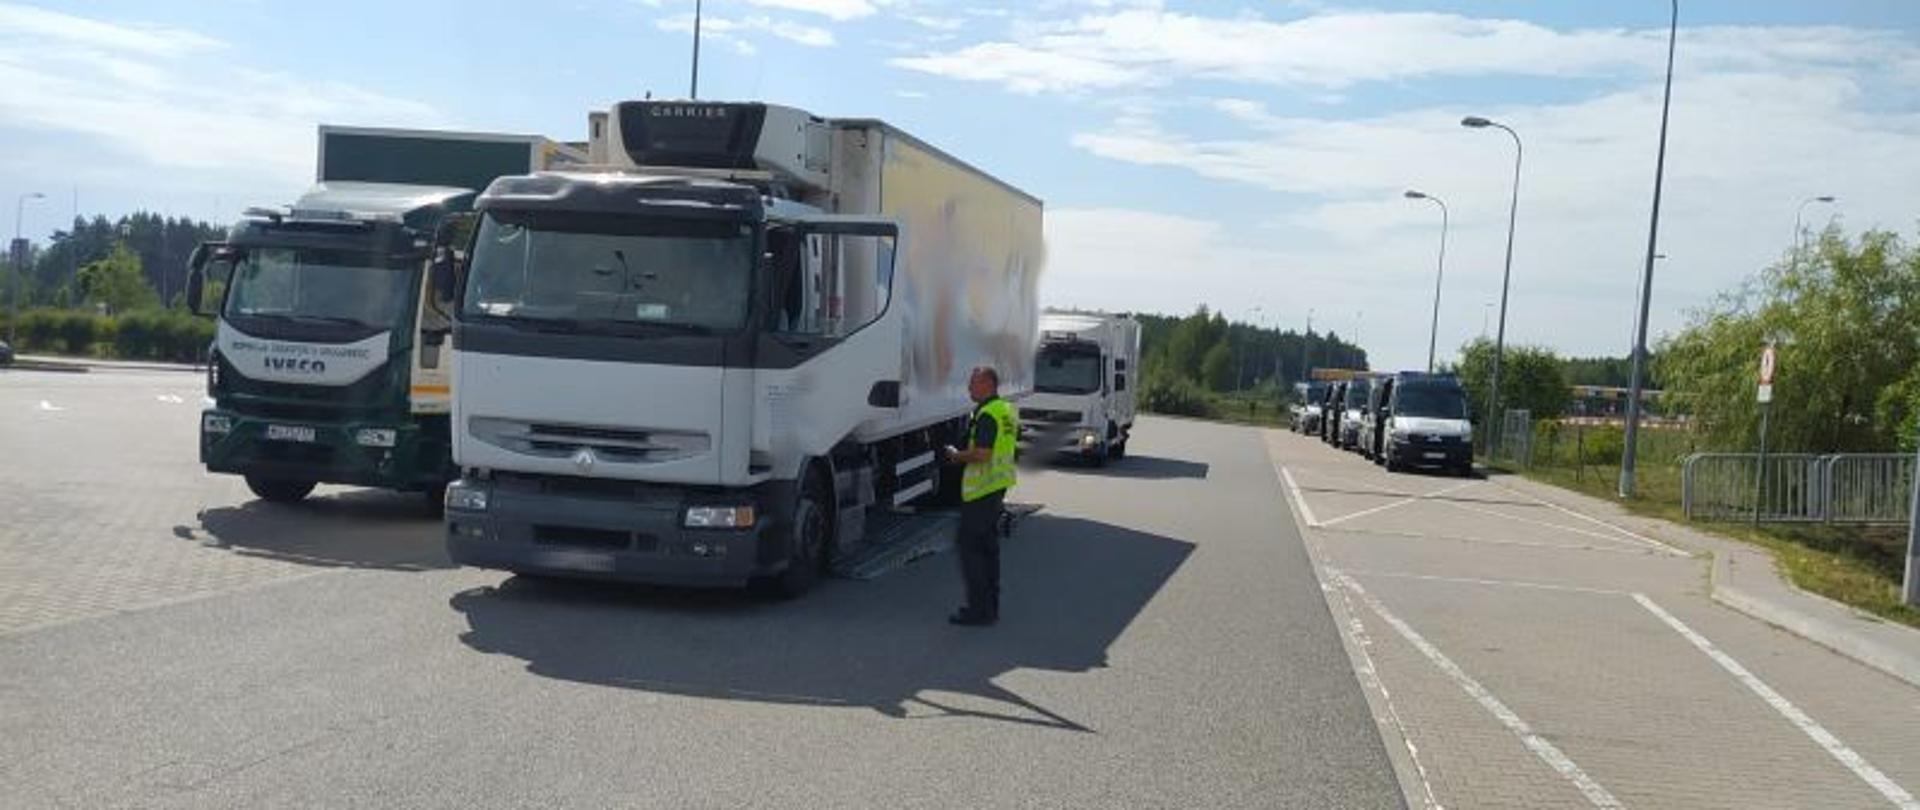 Inspektor podczas kontroli stanu technicznego ciężarówki na Mobilnej Linii Diagnostycznej